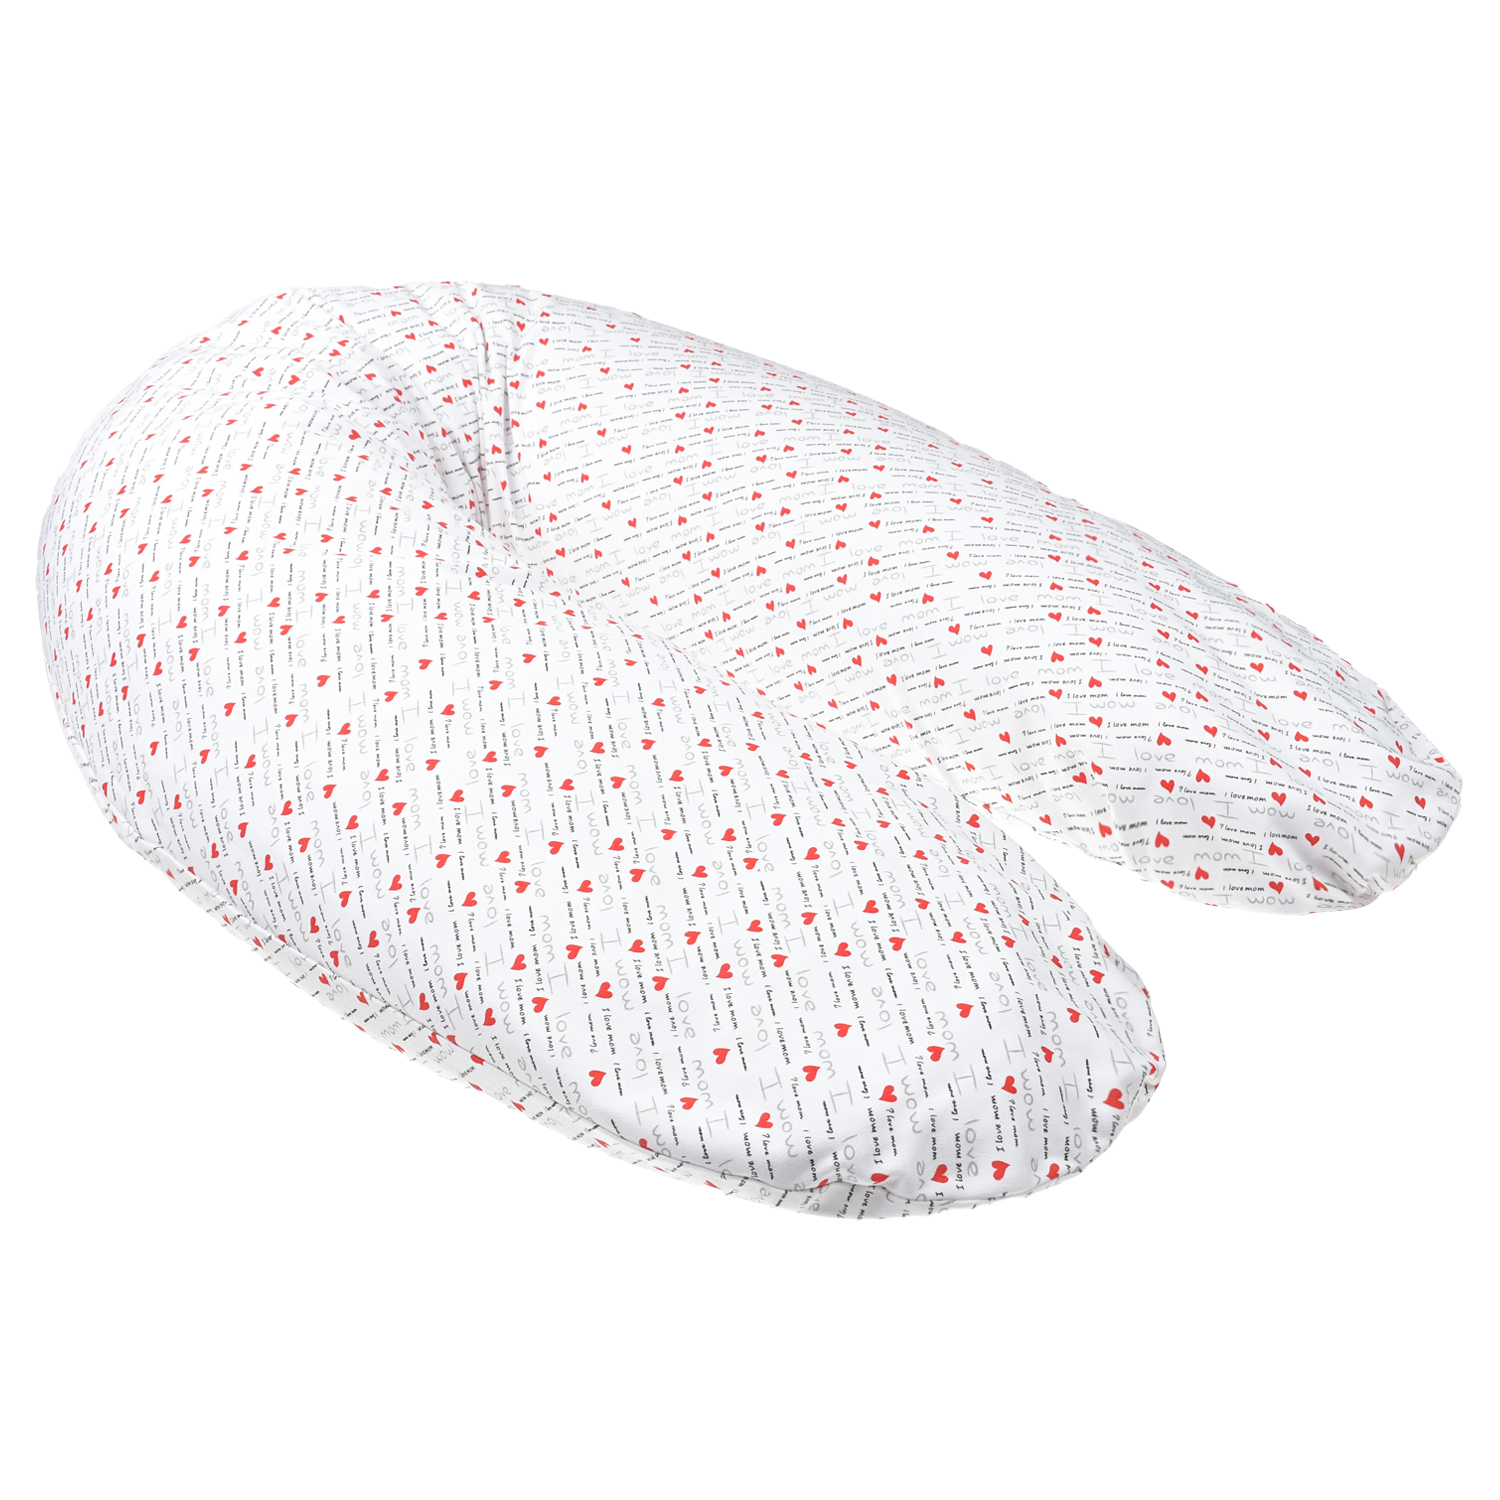 Подушка с принтом сердечки для беременных и кормления, 180 см Dan Maralex